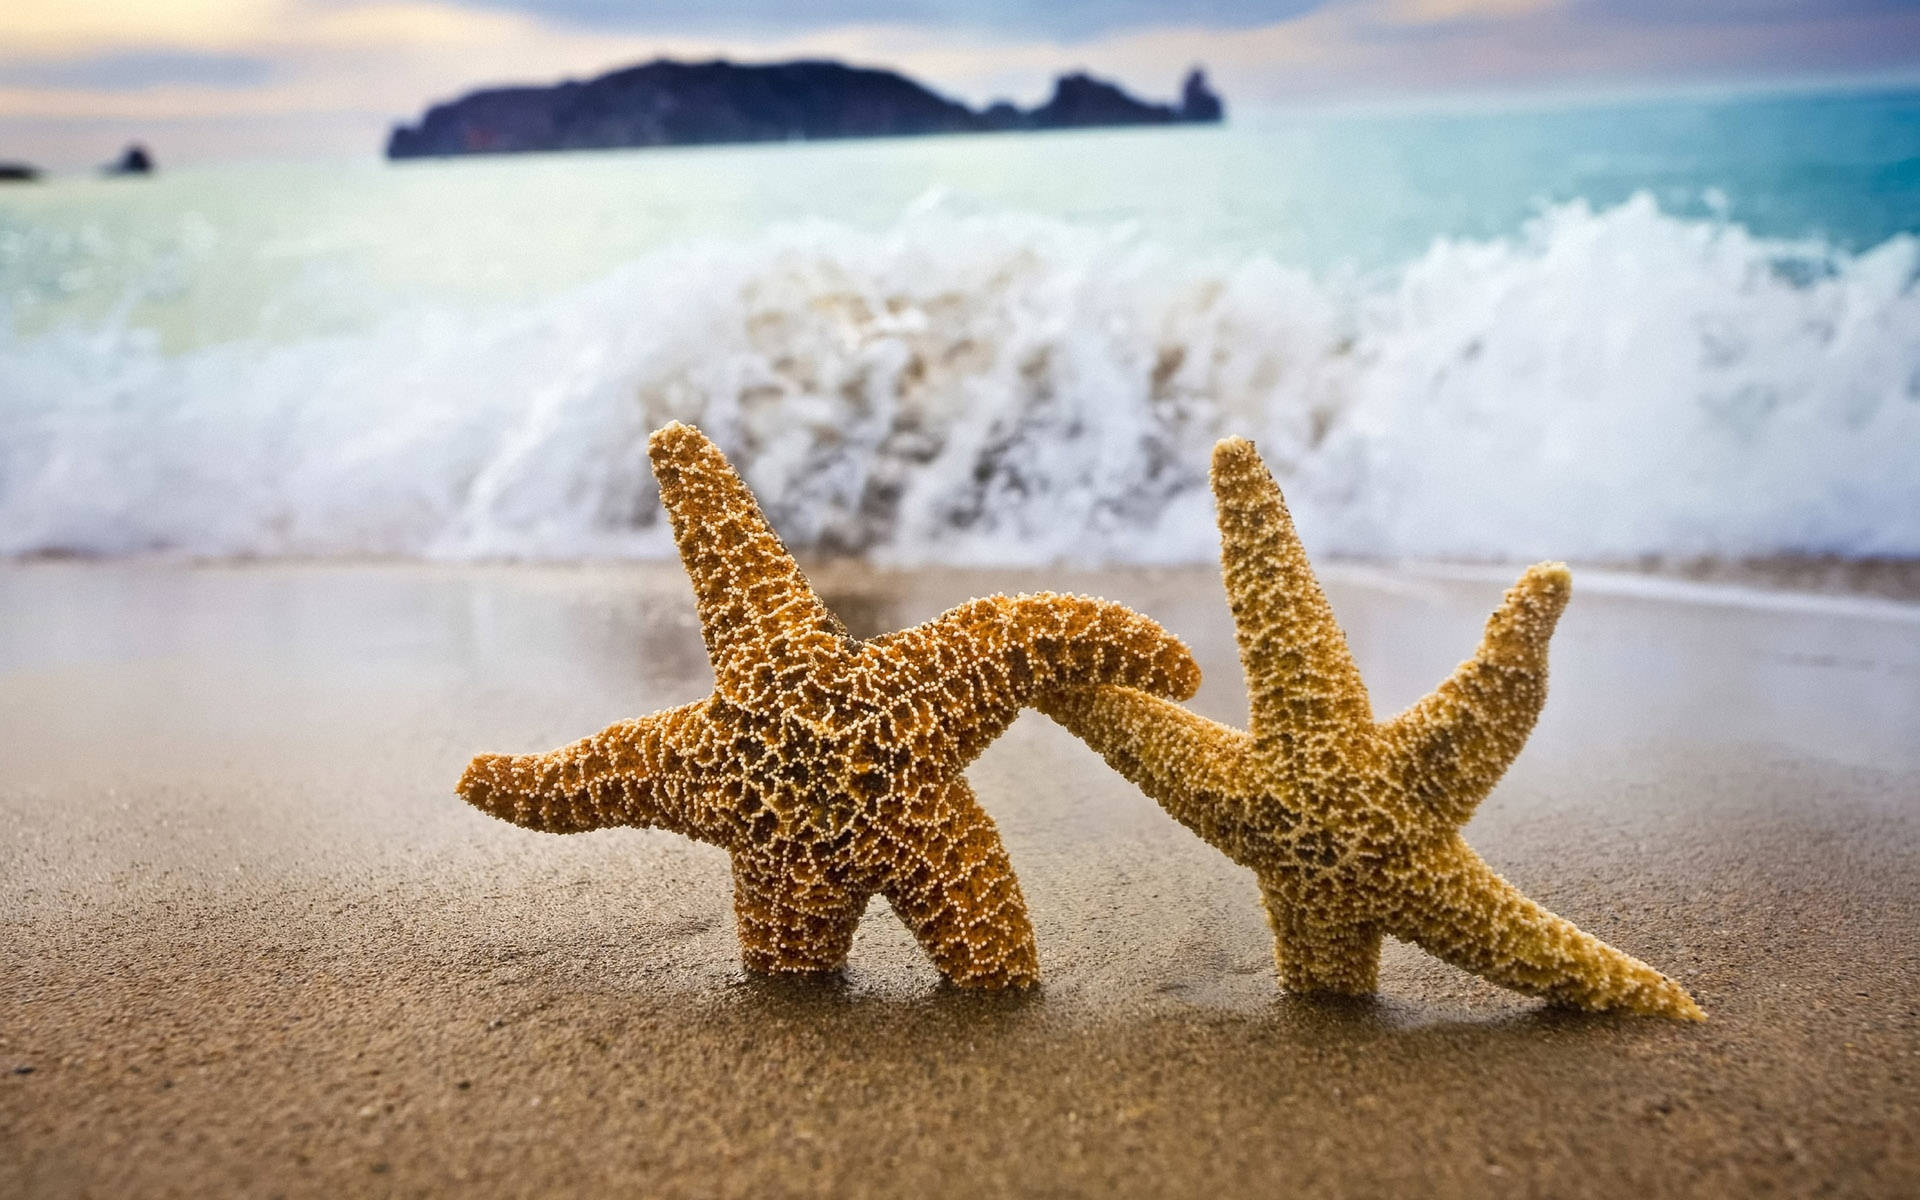 Two starfish on the beach wallpaper 2560x1600 - Starfish